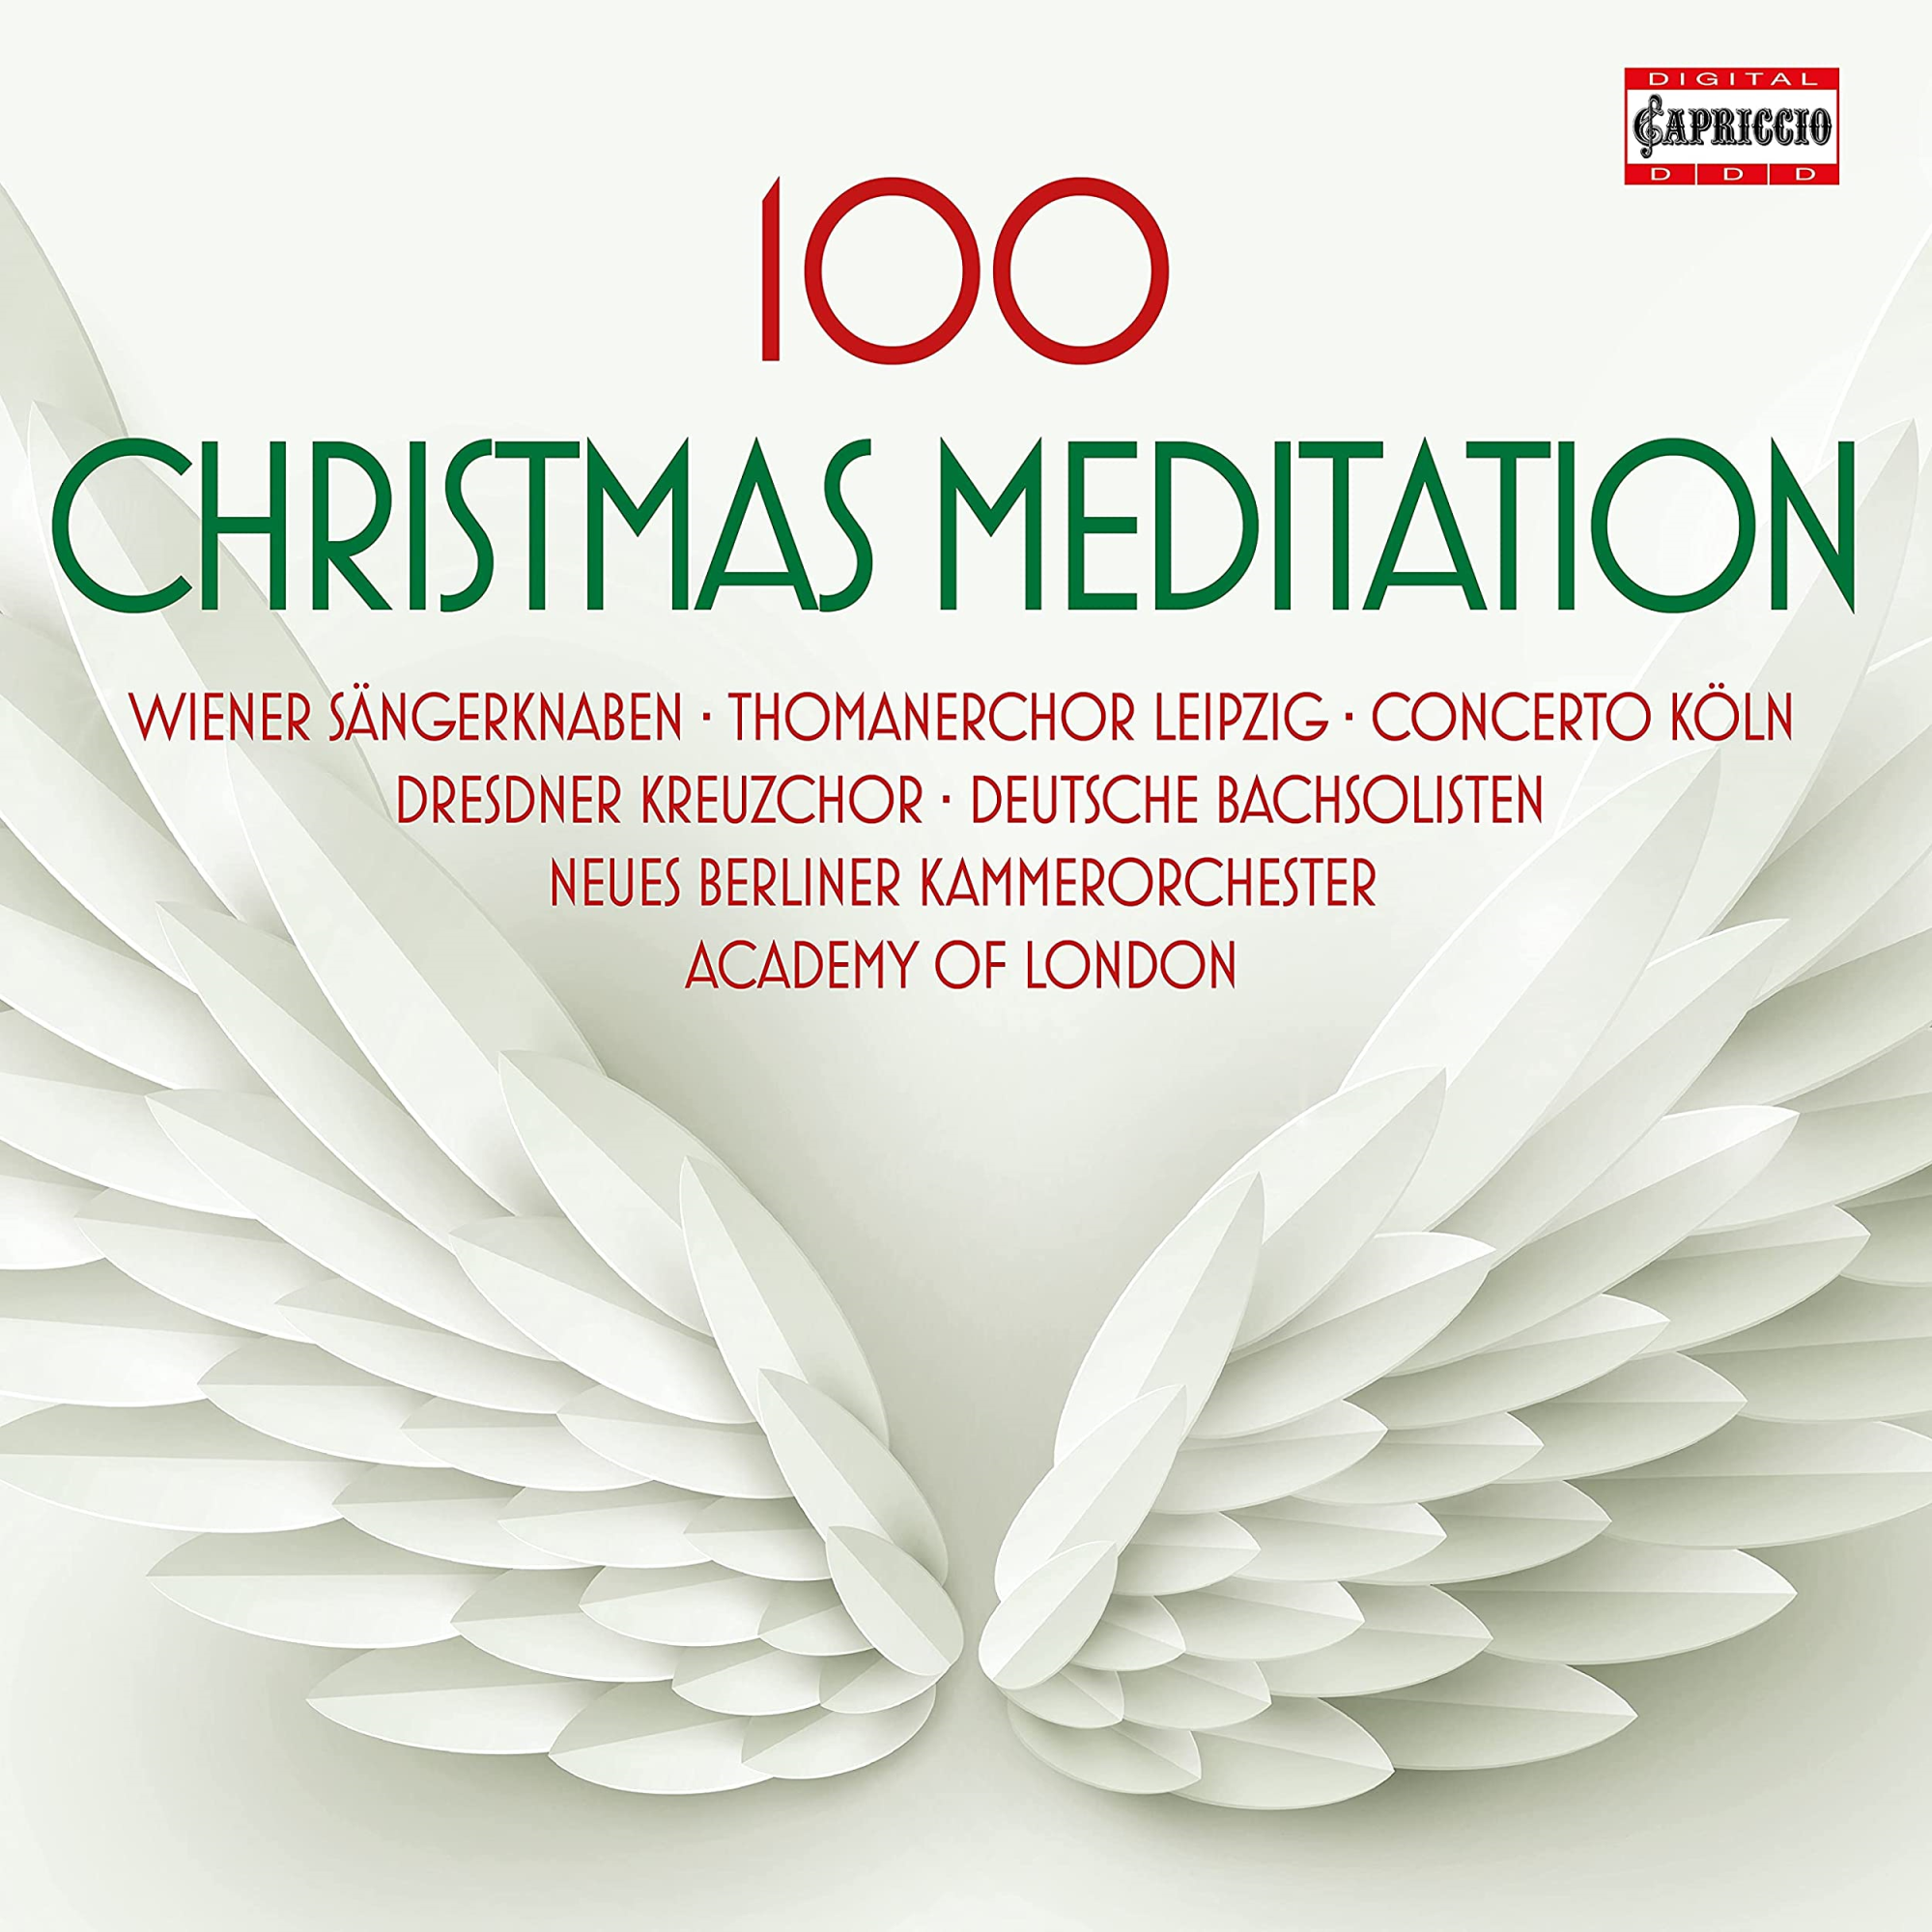 Audio Cd 100 Christmas Meditation (5 Cd) NUOVO SIGILLATO, EDIZIONE DEL 08/09/2021 SUBITO DISPONIBILE